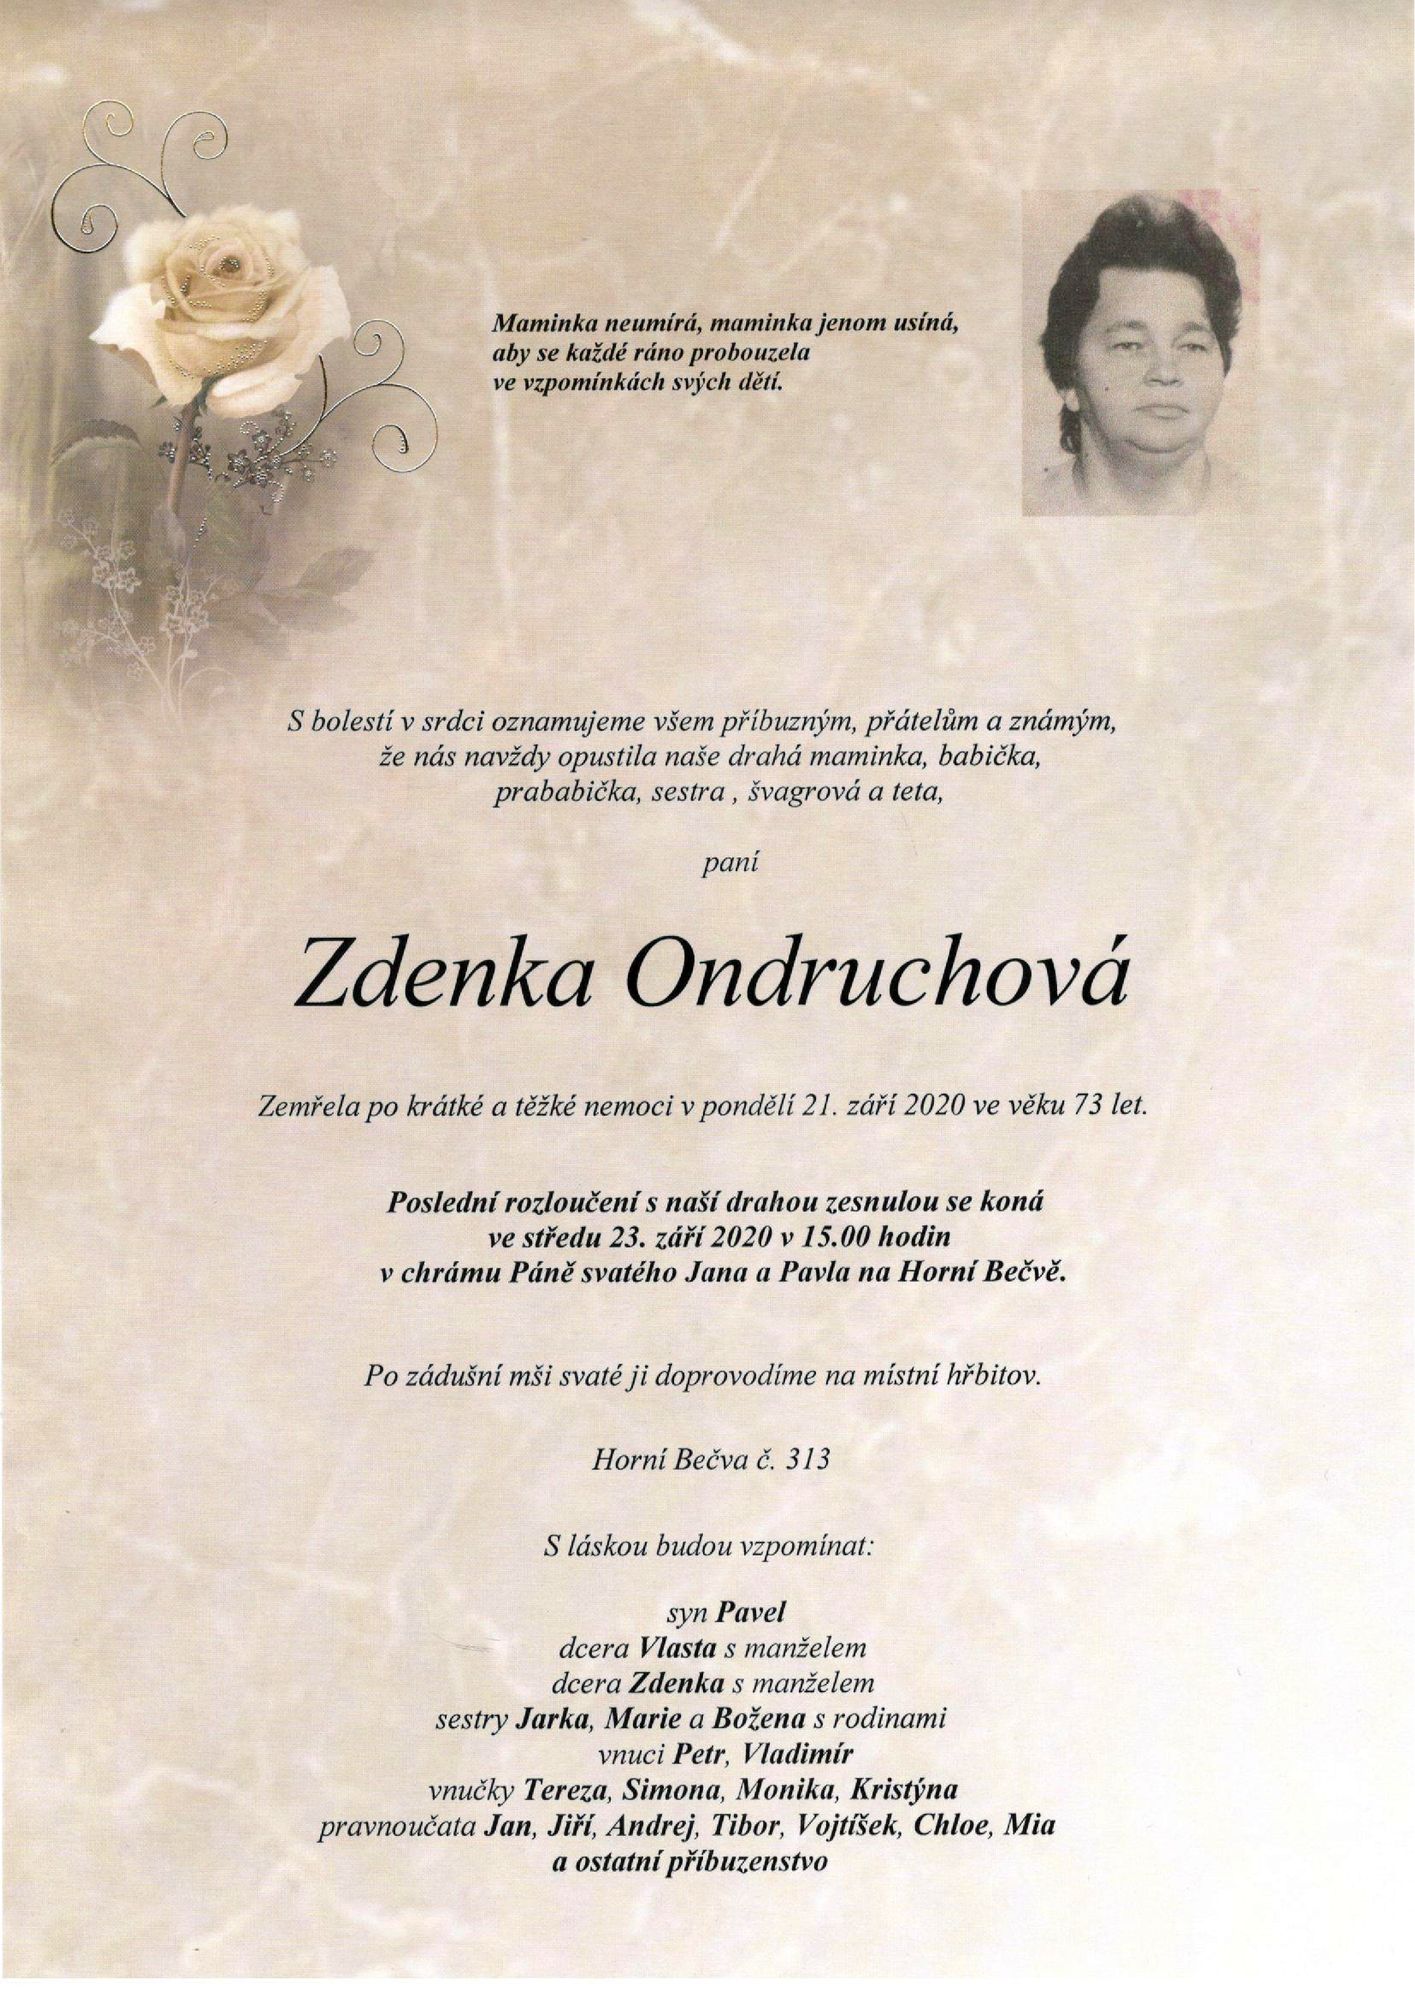 Zdenka Ondruchová